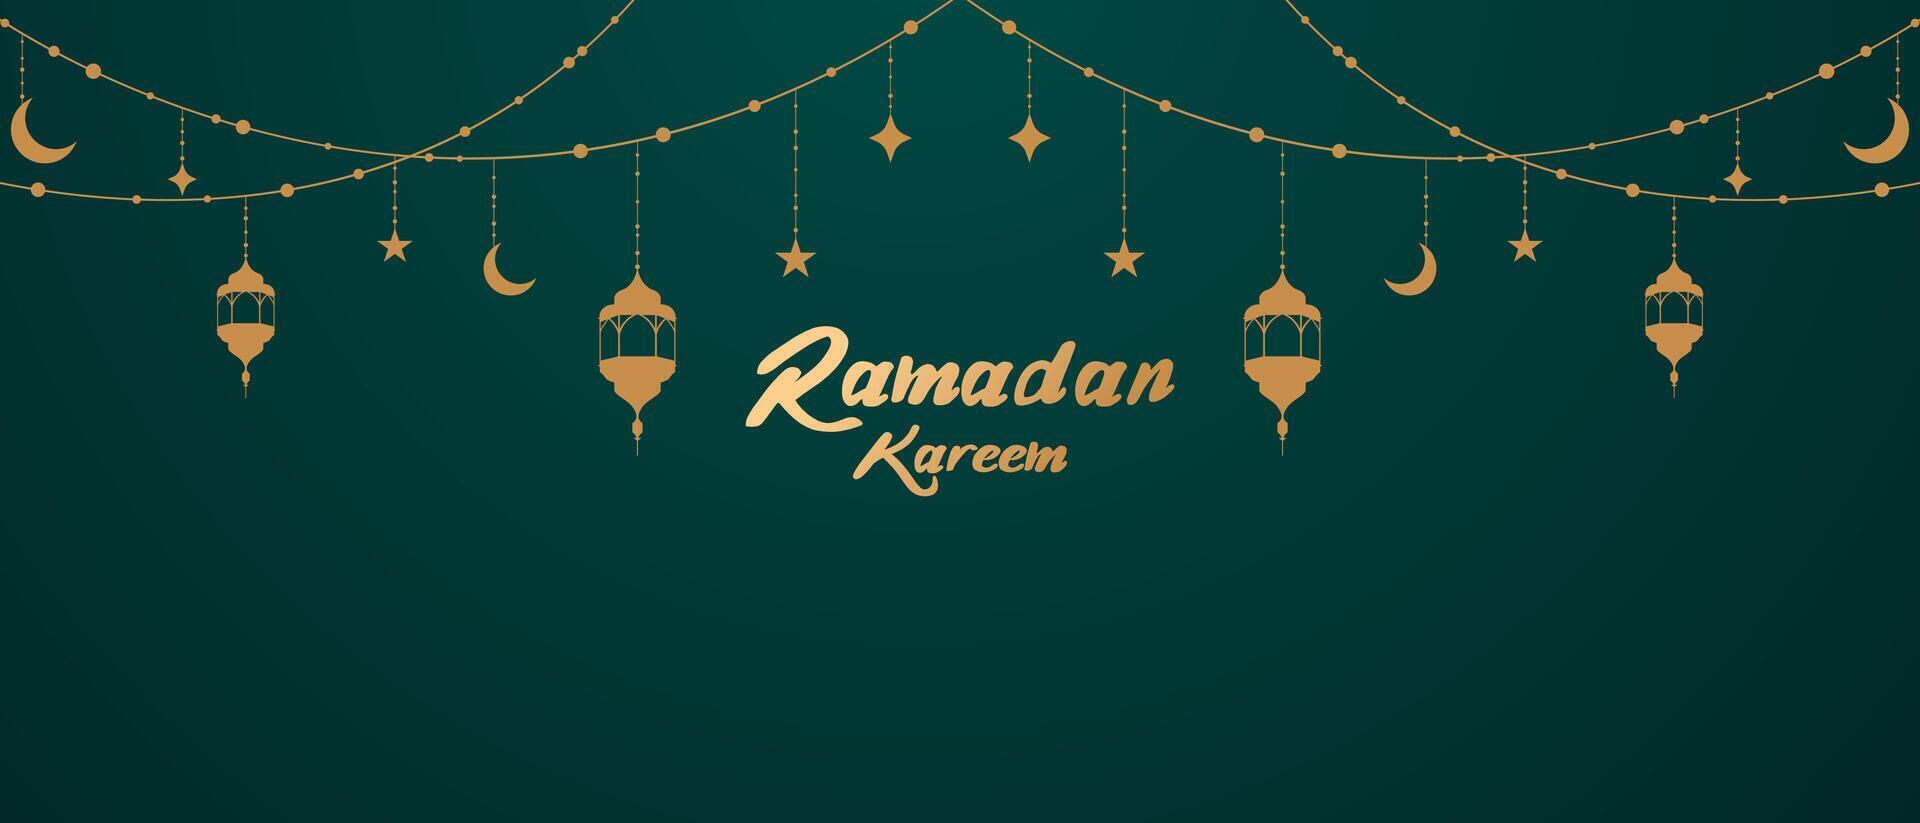 Ramadan kareem islamique Festival salutation avec magnifique lanternes décoré conception vecteur illustration